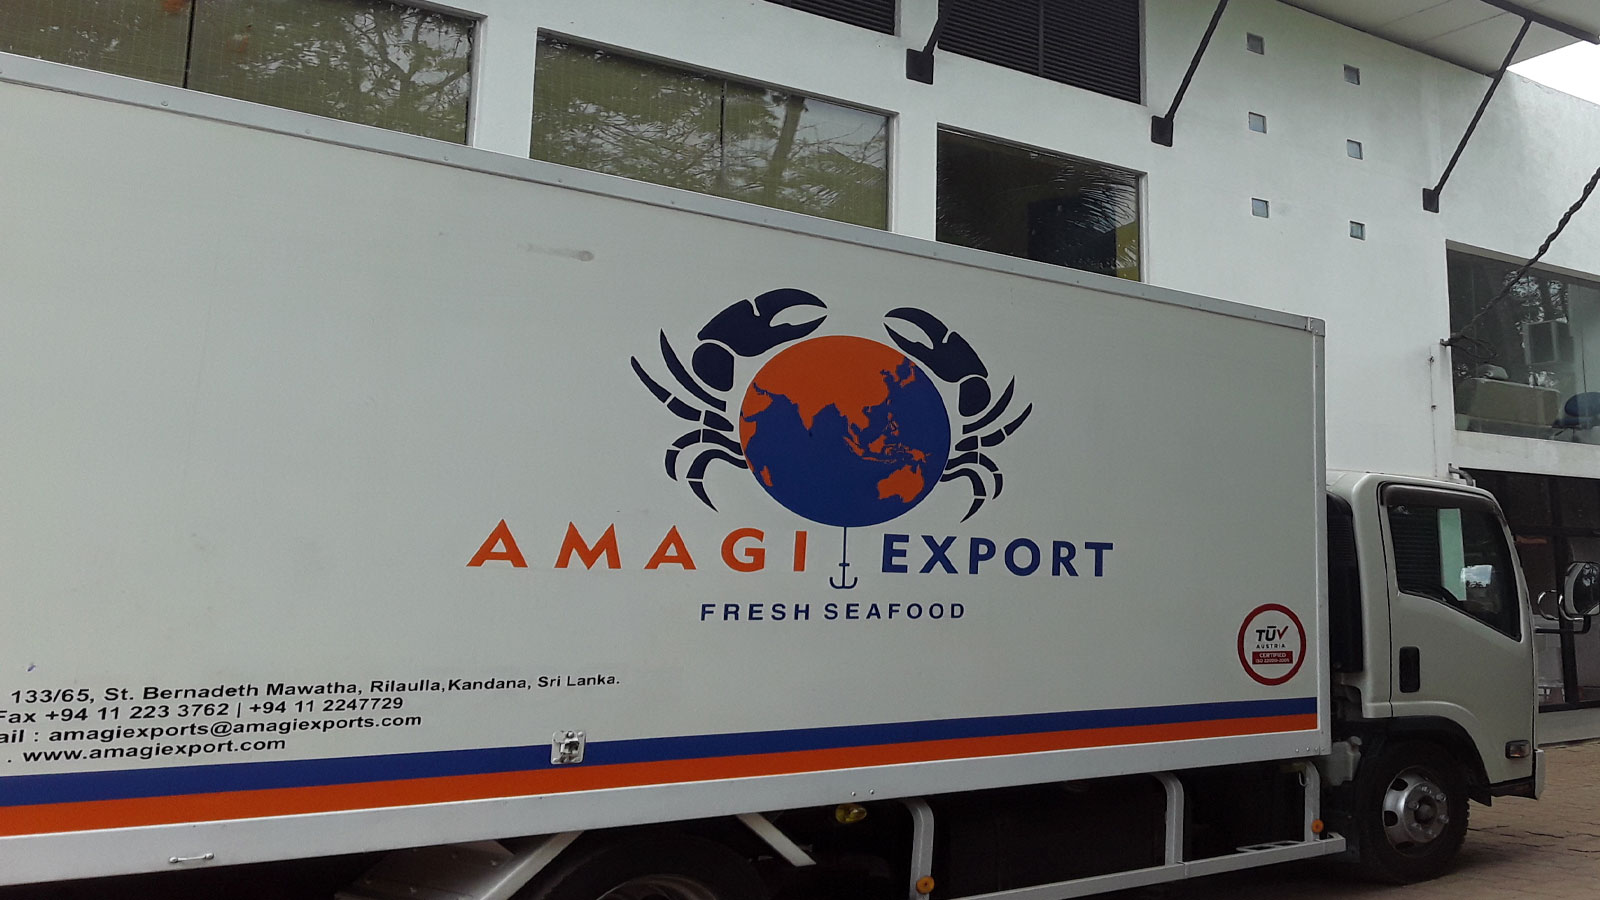 AMAGI EXPORT